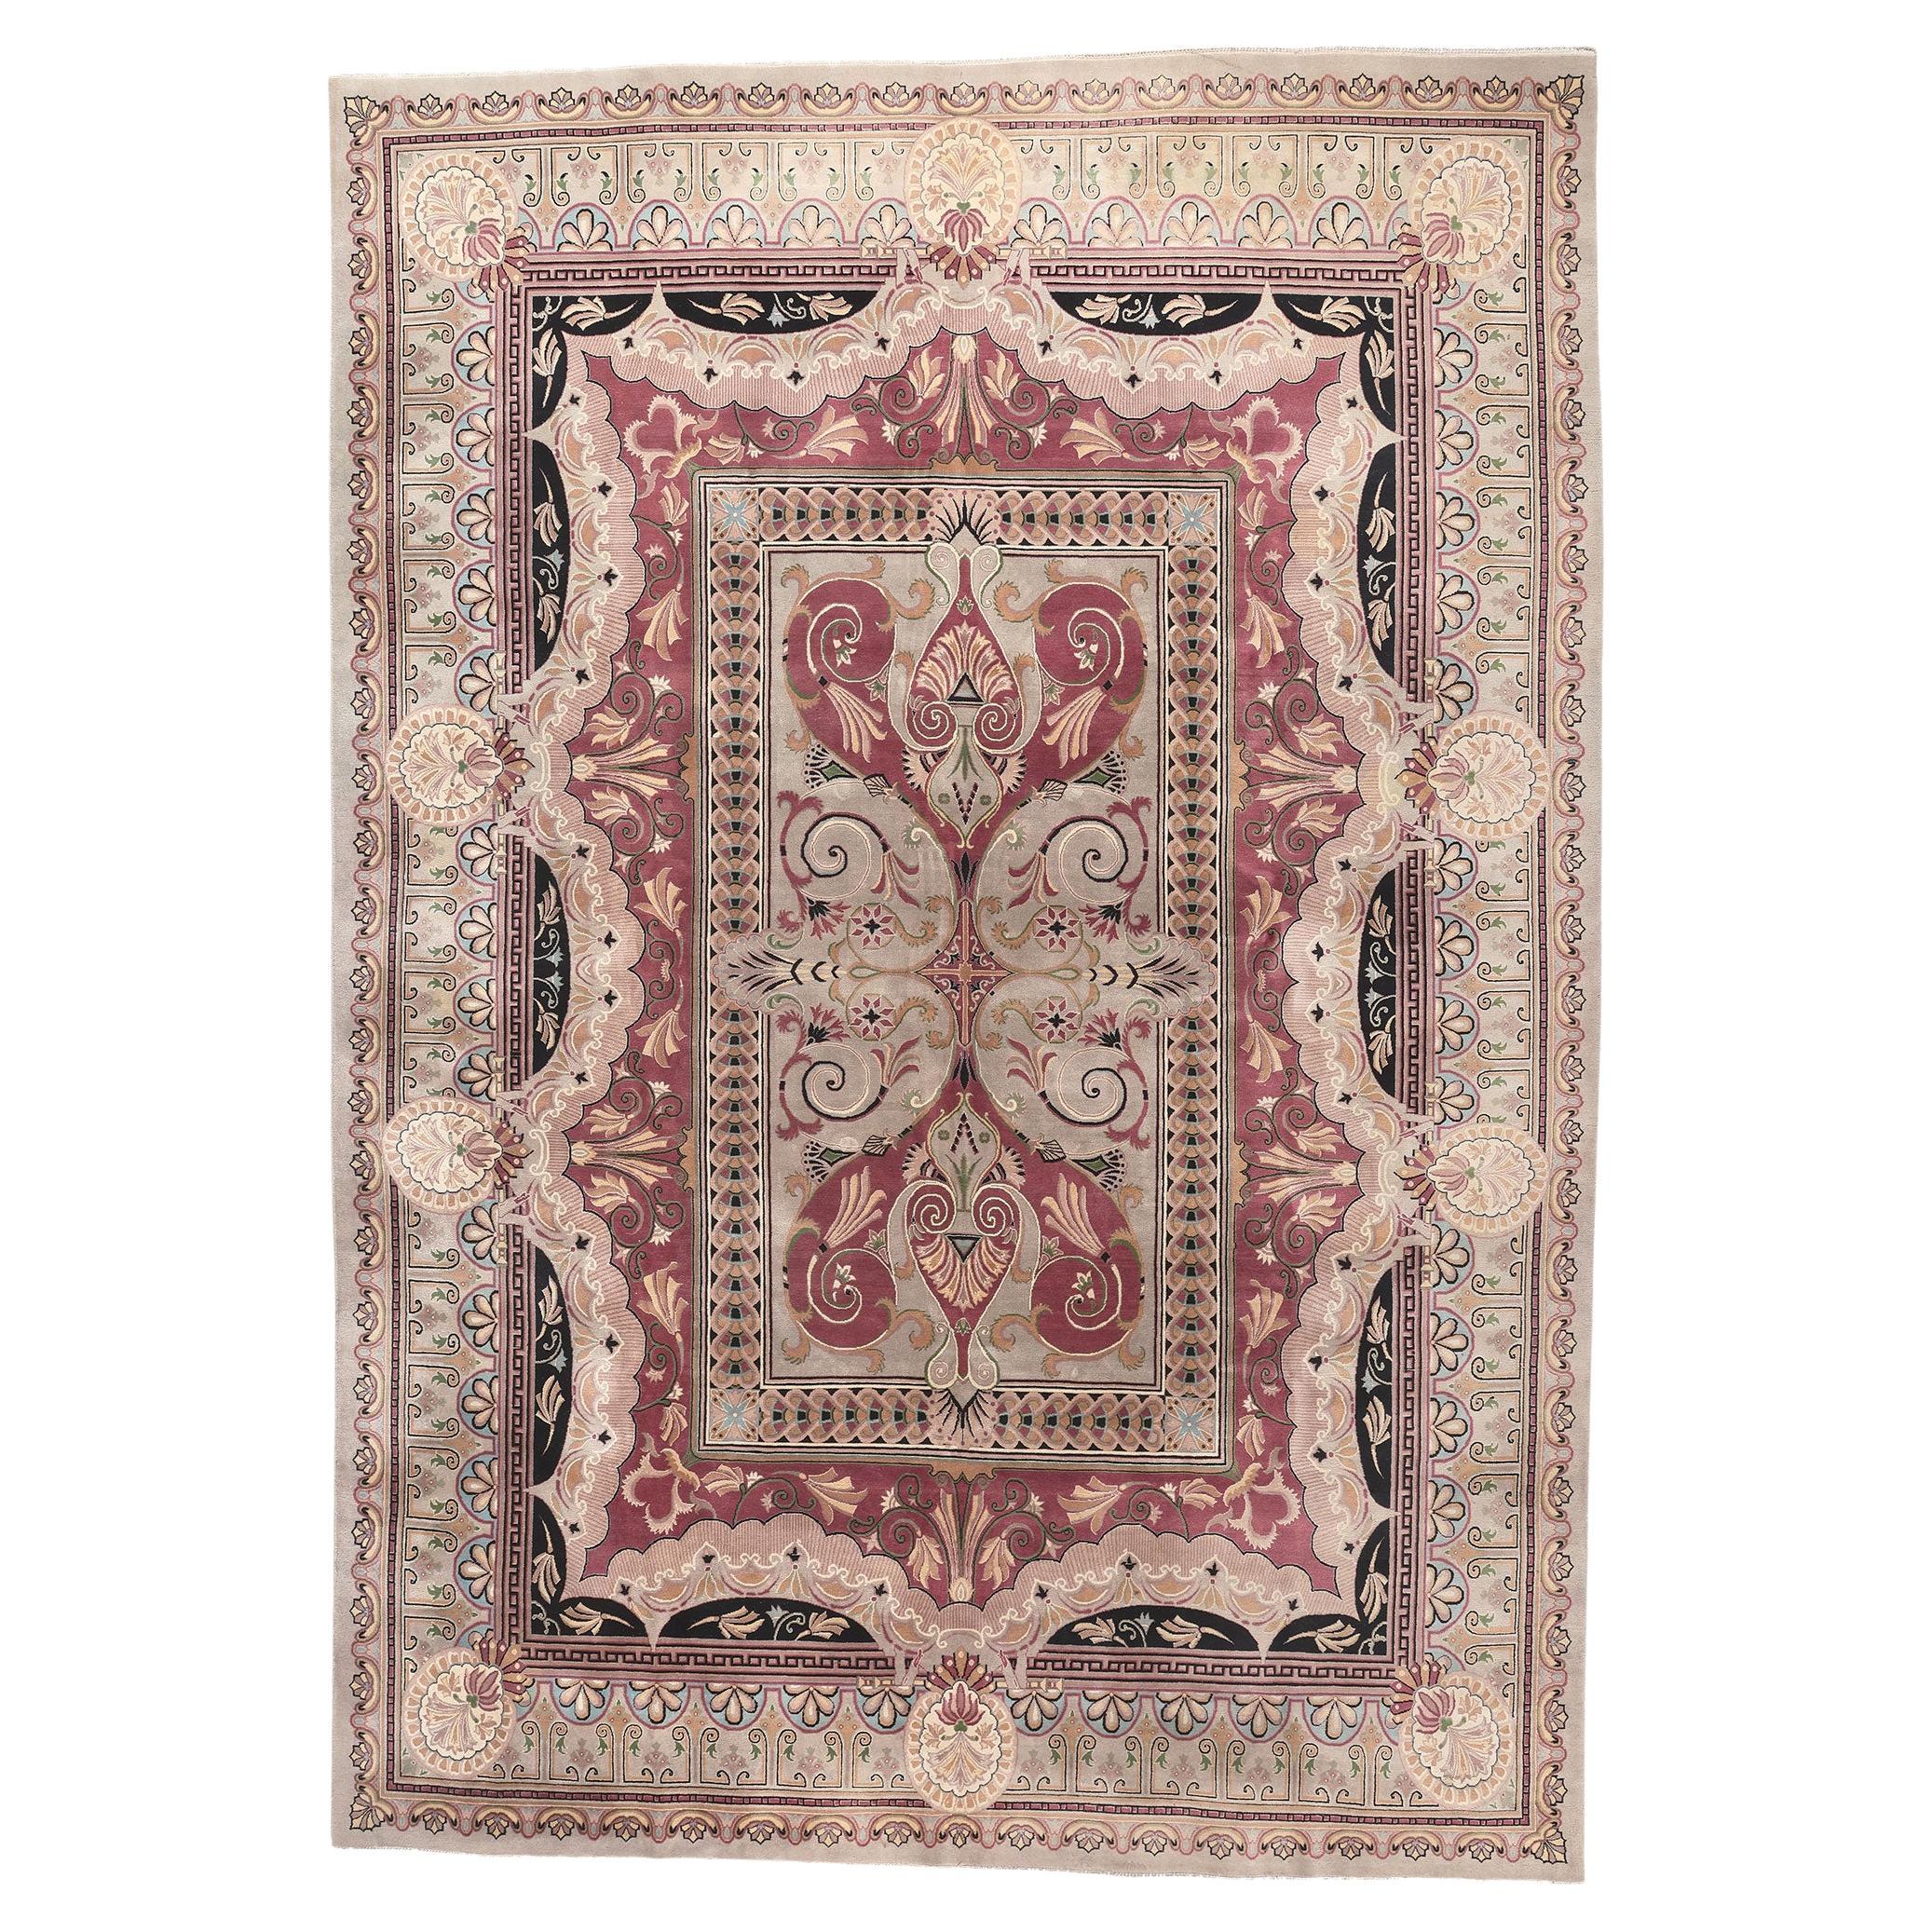 Französischer Teppich im Aubusson Savonnerie-Stil, die lavendelfarbene Seite des Rokoko